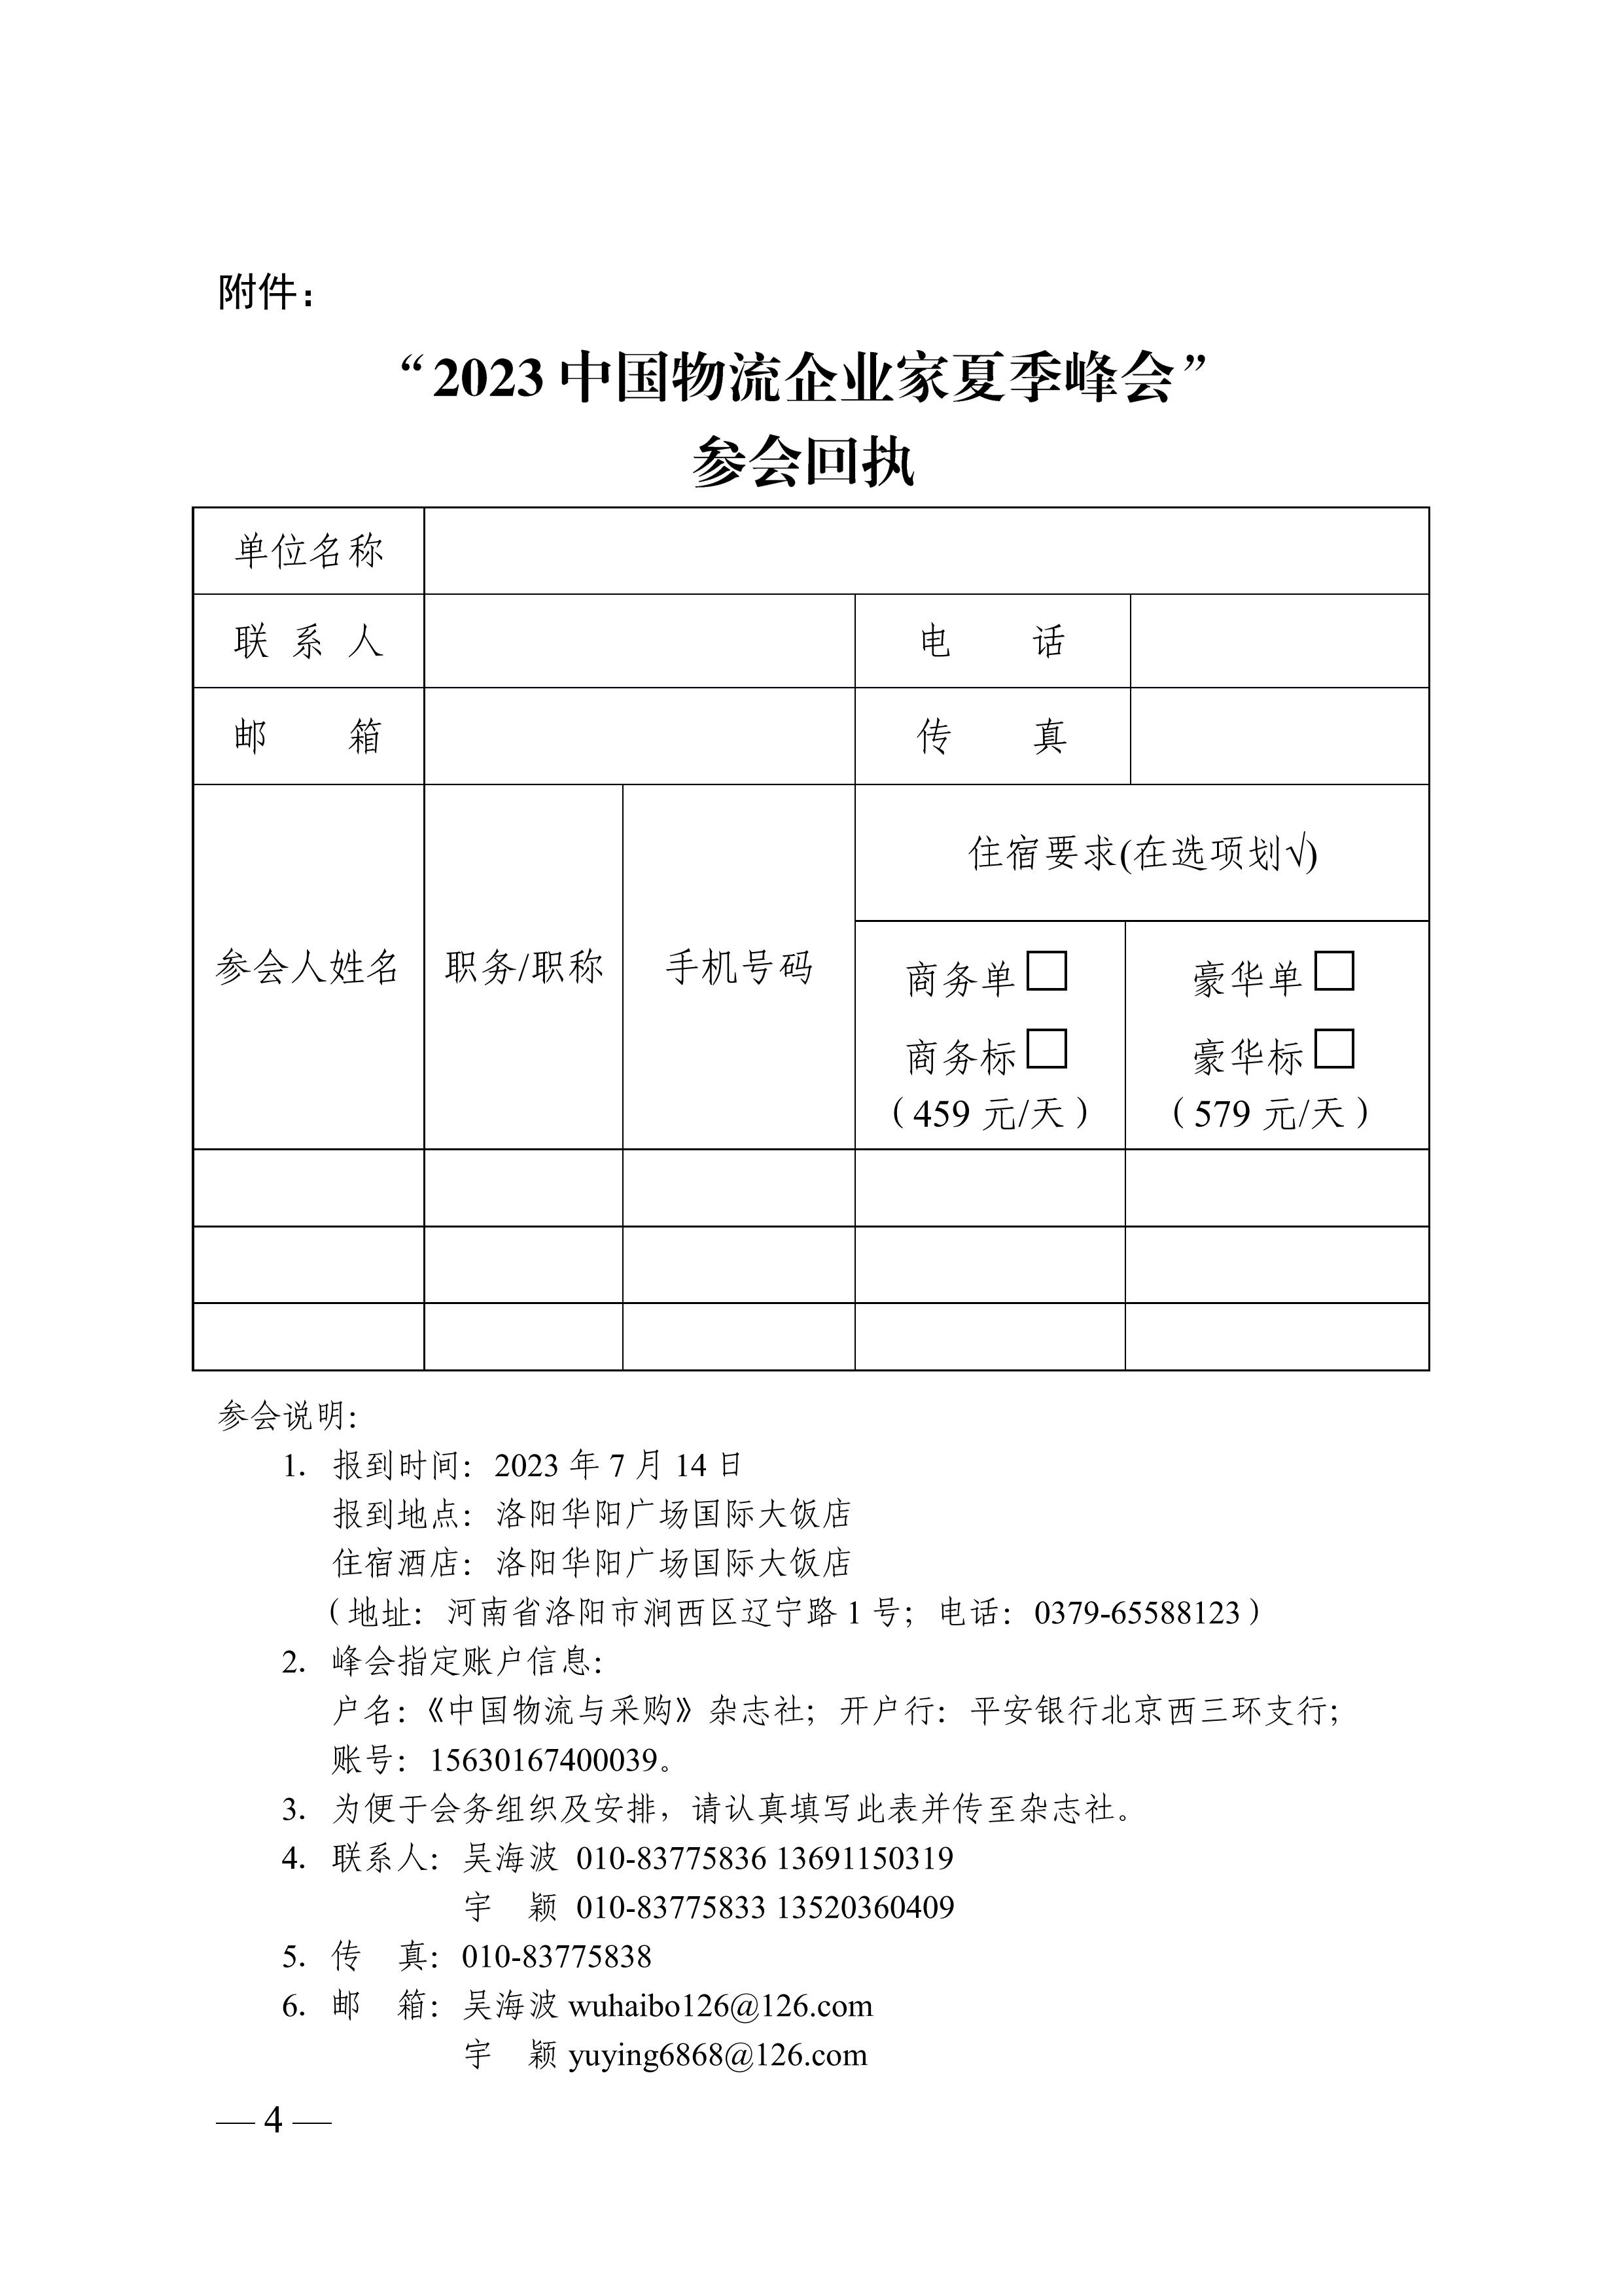 关于召开“2023中国物流企业家夏季峰会.文件通知pdf_04.jpg